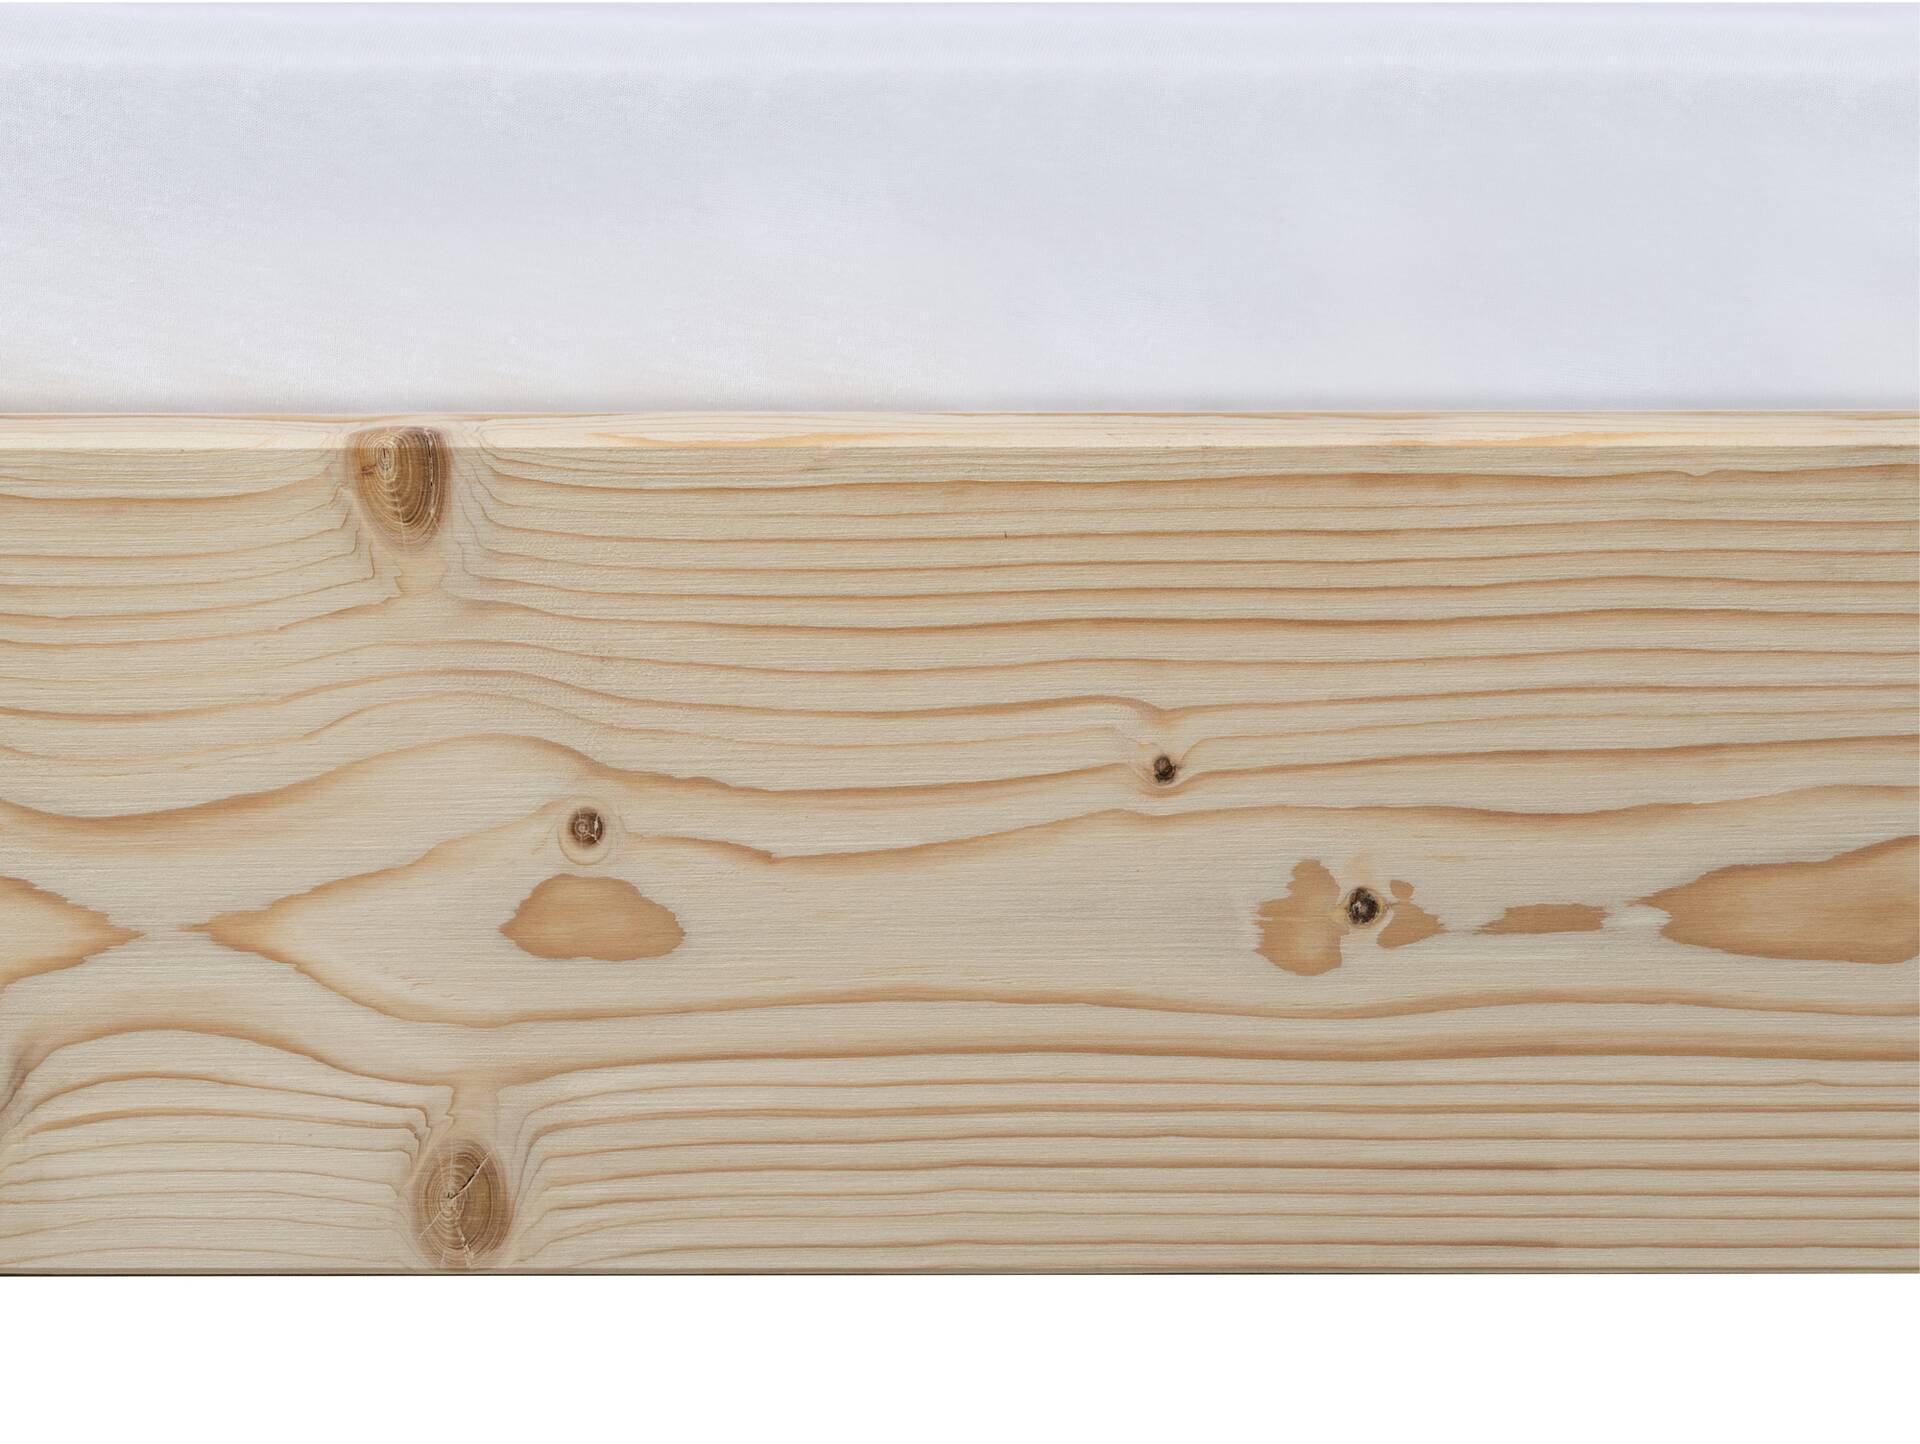 LUKY Kufenbett ohne Kopfteil, Material Massivholz, Fichte massiv, Kufen weiß 90 x 200 cm | natur